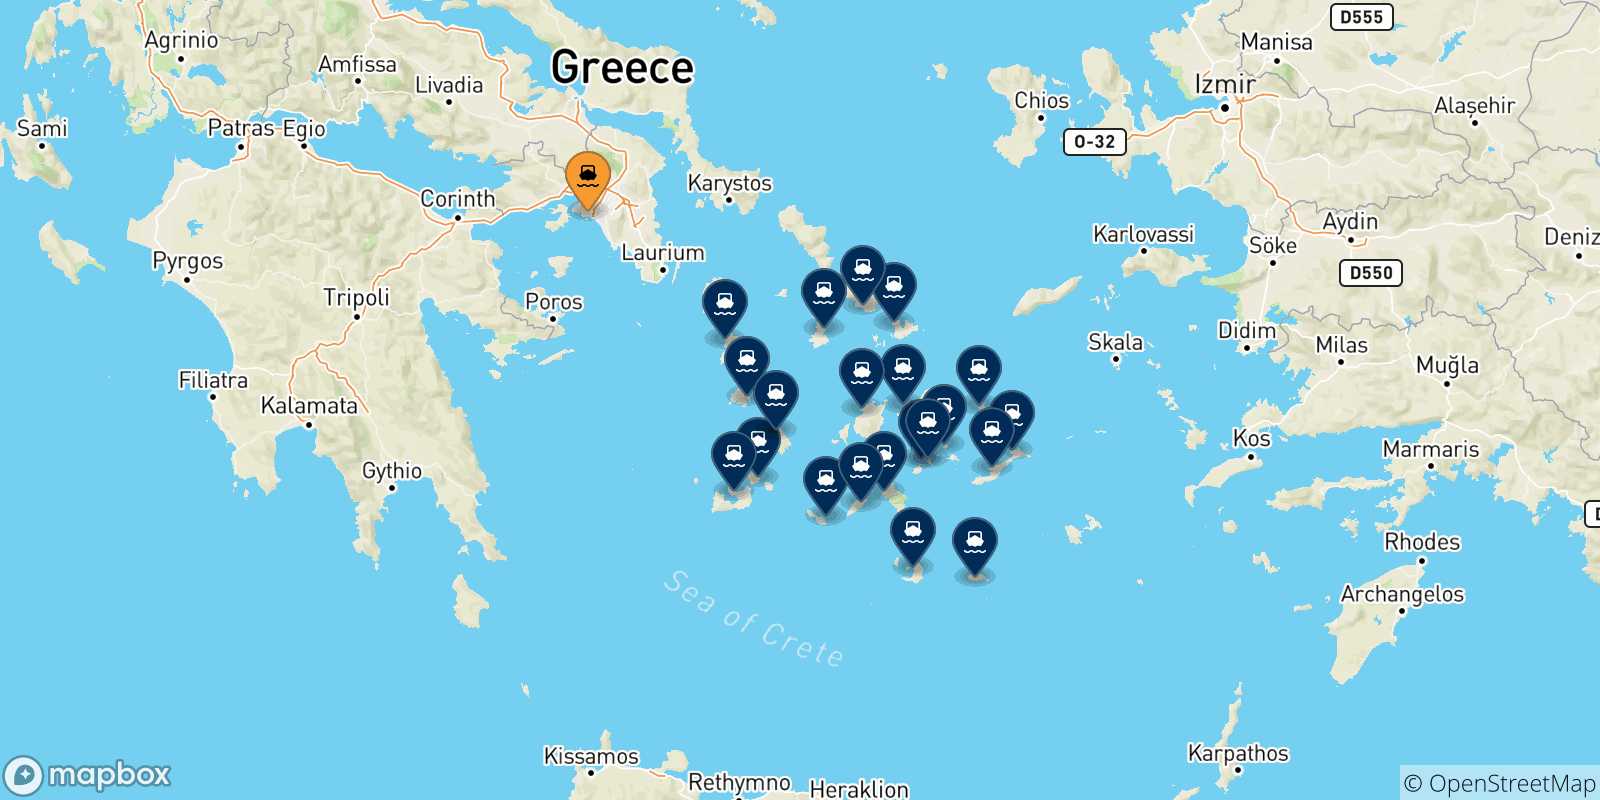 Mappa delle possibili rotte tra Pireo e le Isole Cicladi